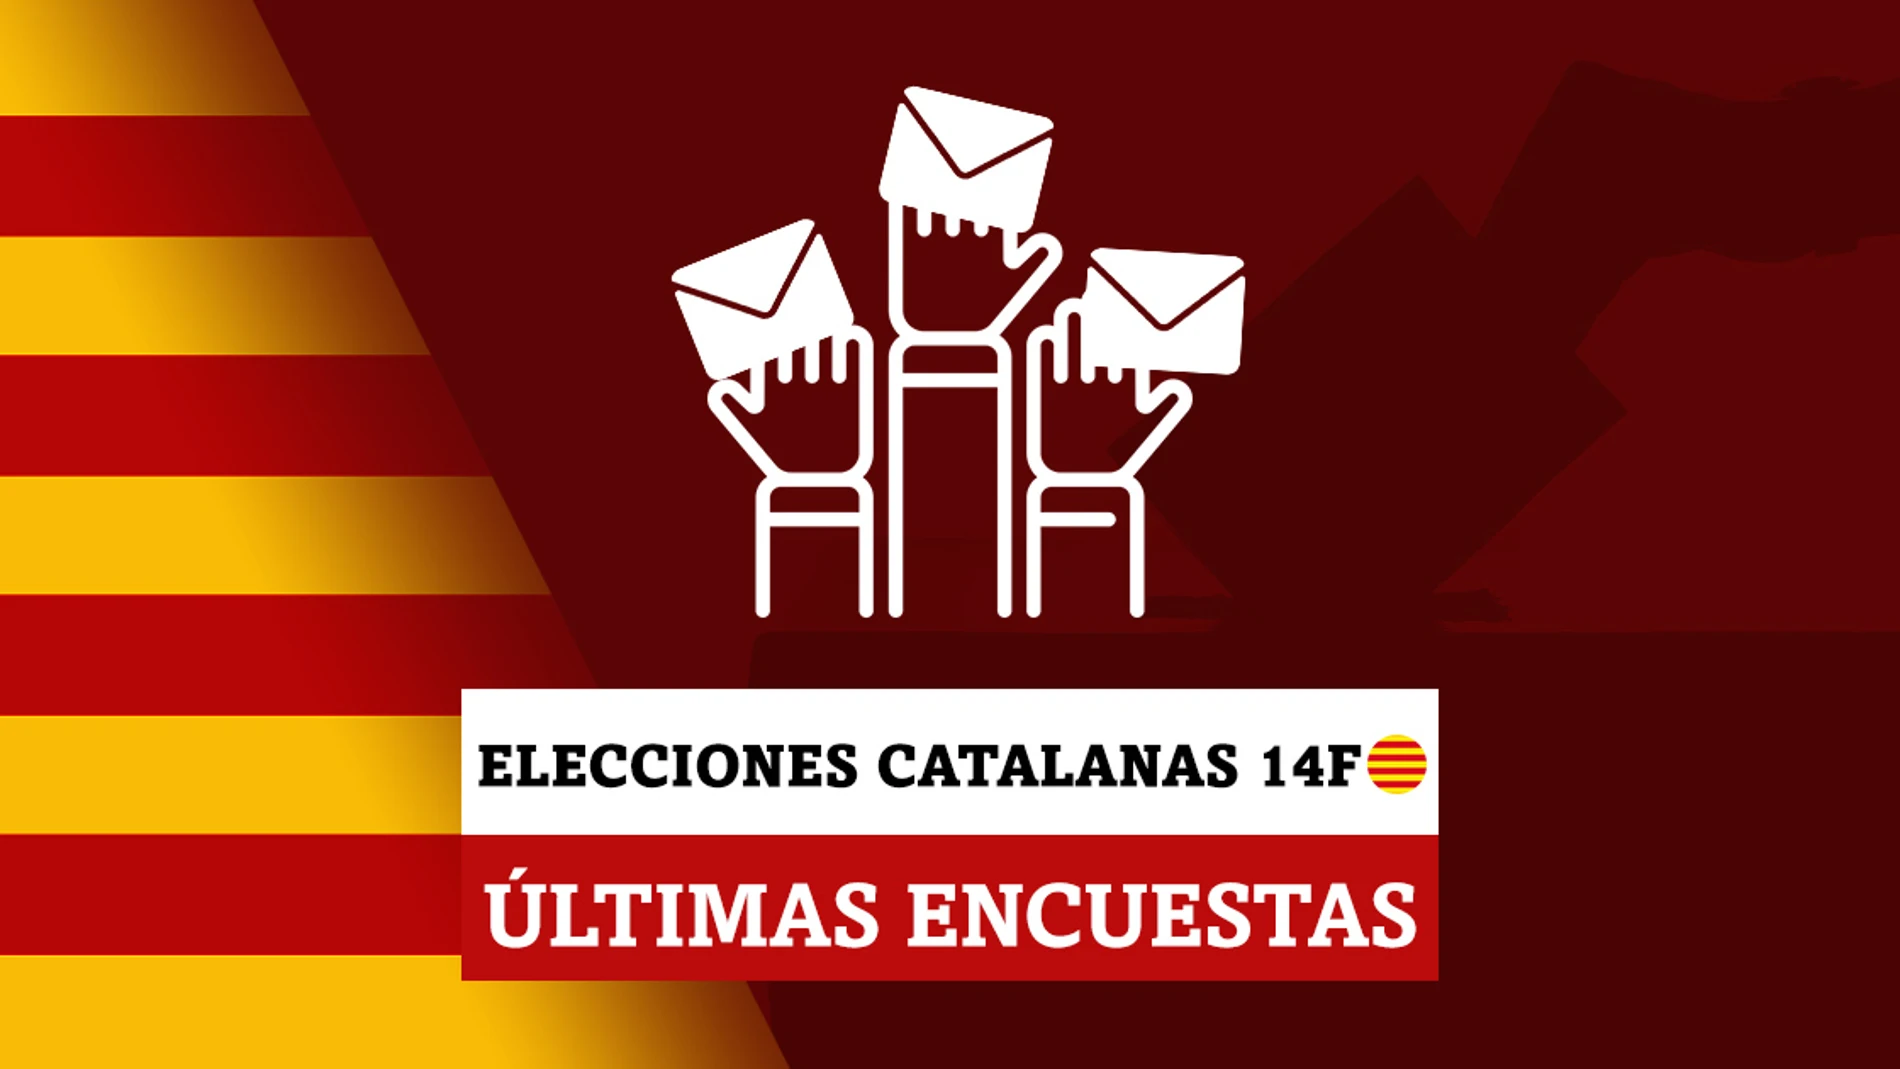 Estas son las últimas encuestas de las elecciones catalanas del 14F